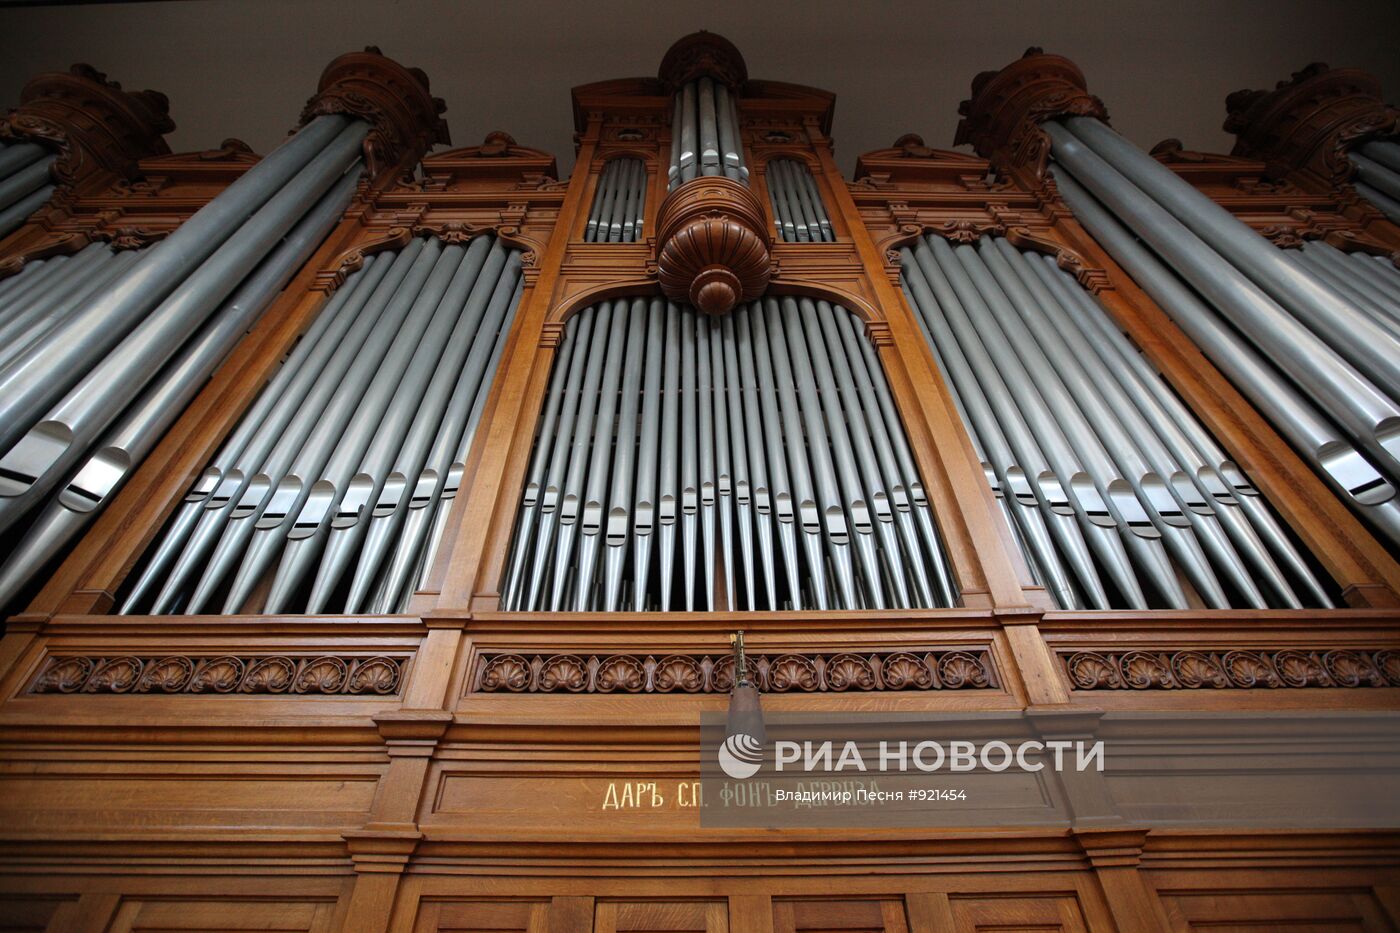 Освящение Большого зала Московской консерватории